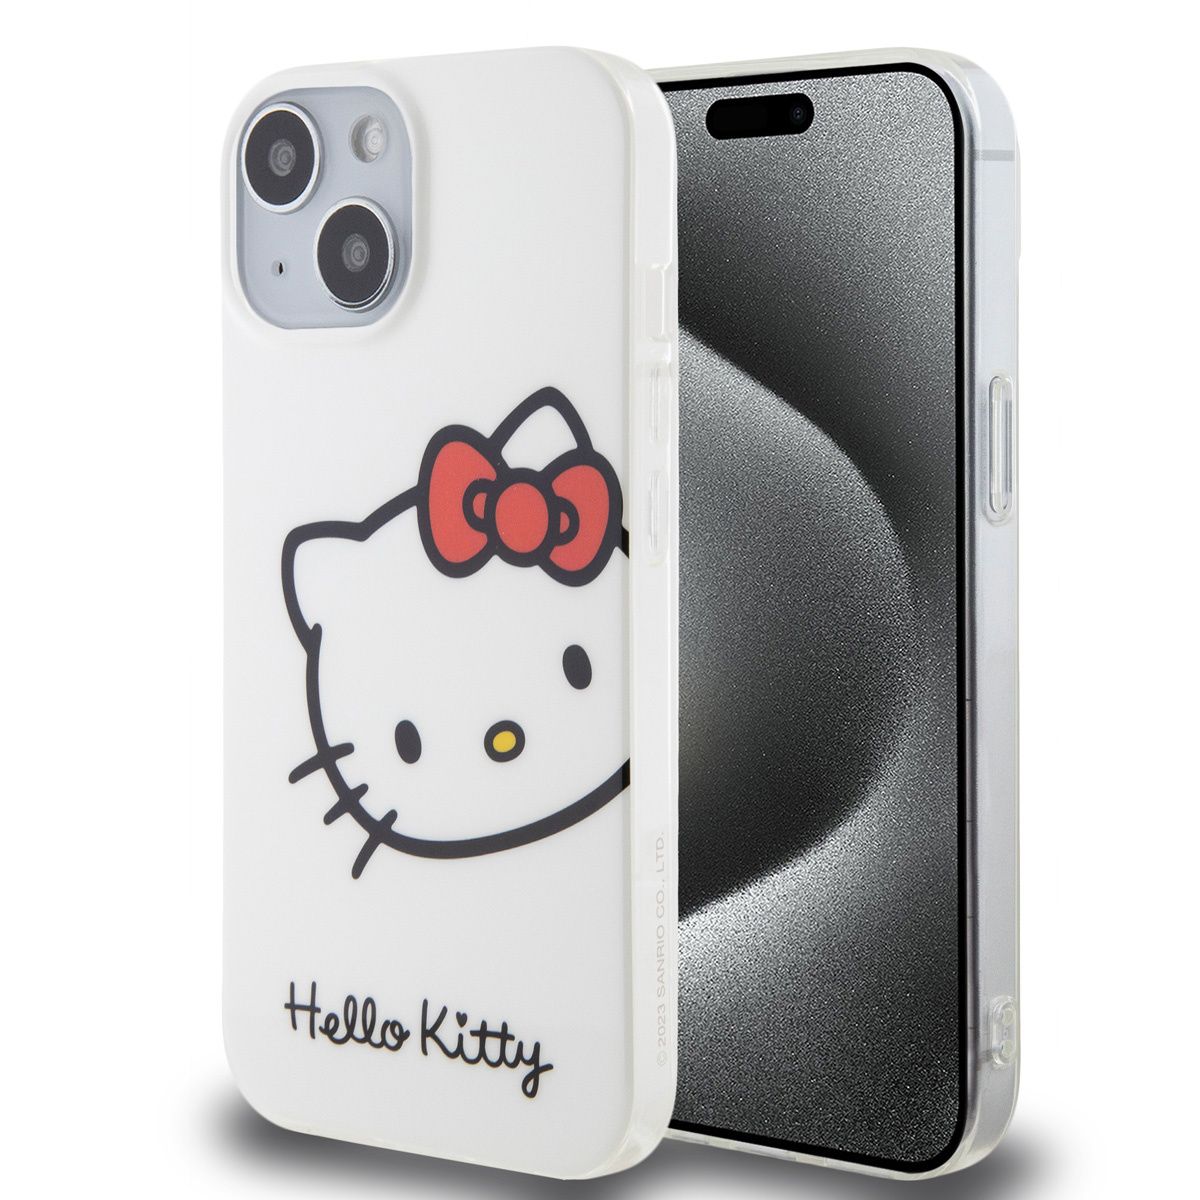 Chargeur iPhone - Accessoire - Hello Kitty - Étui de protection -  Protection câble iPhone